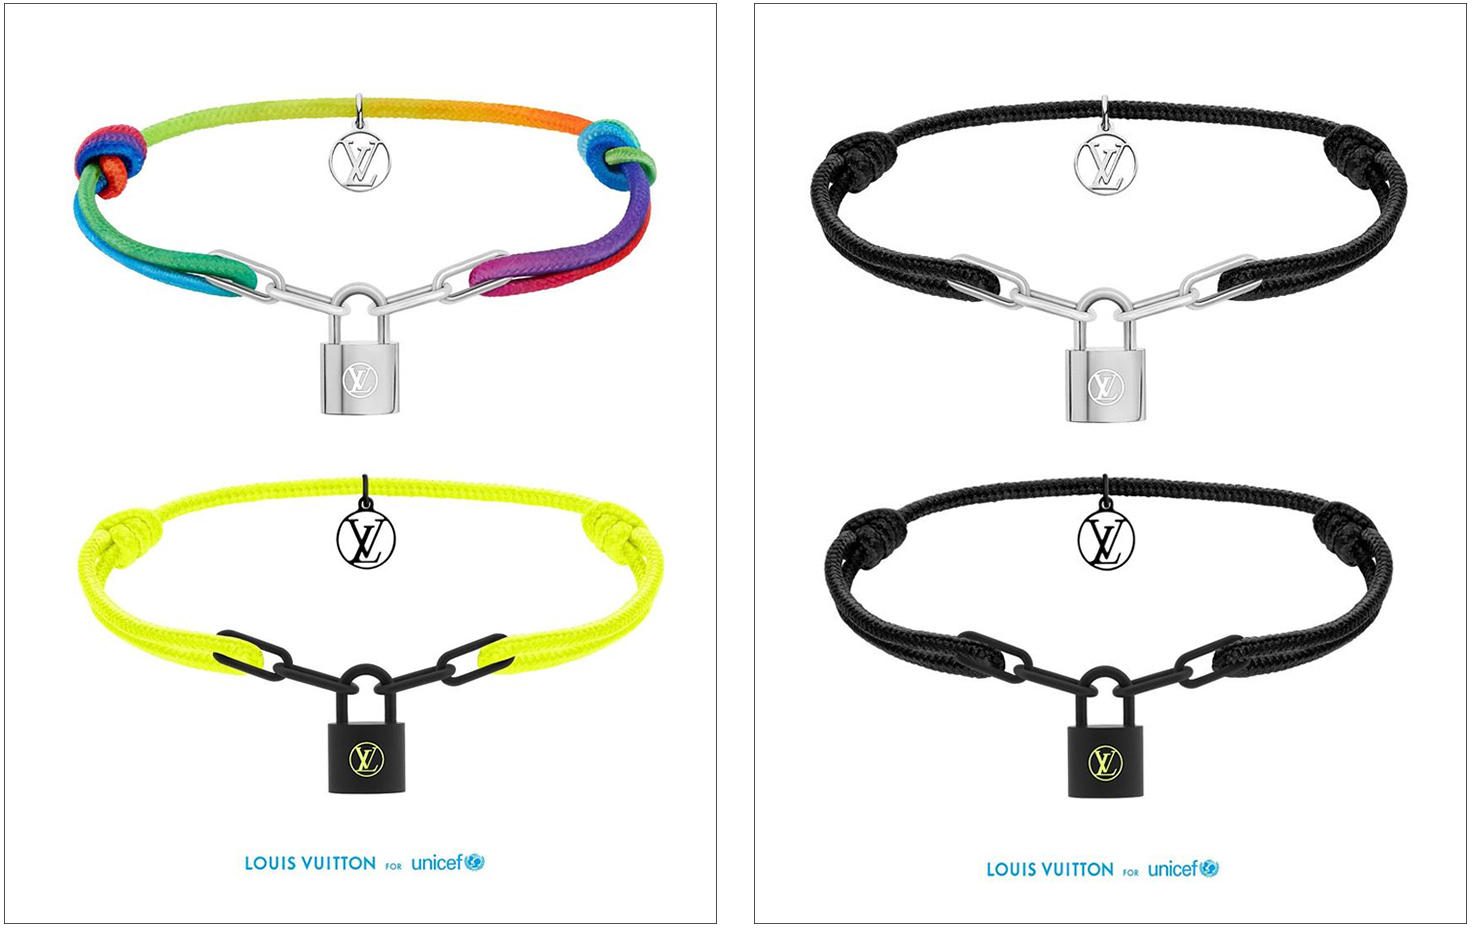 Virgil Abloh Designs Latest Louis Vuitton Lockit Bracelet For UNICEF  Fundraiser